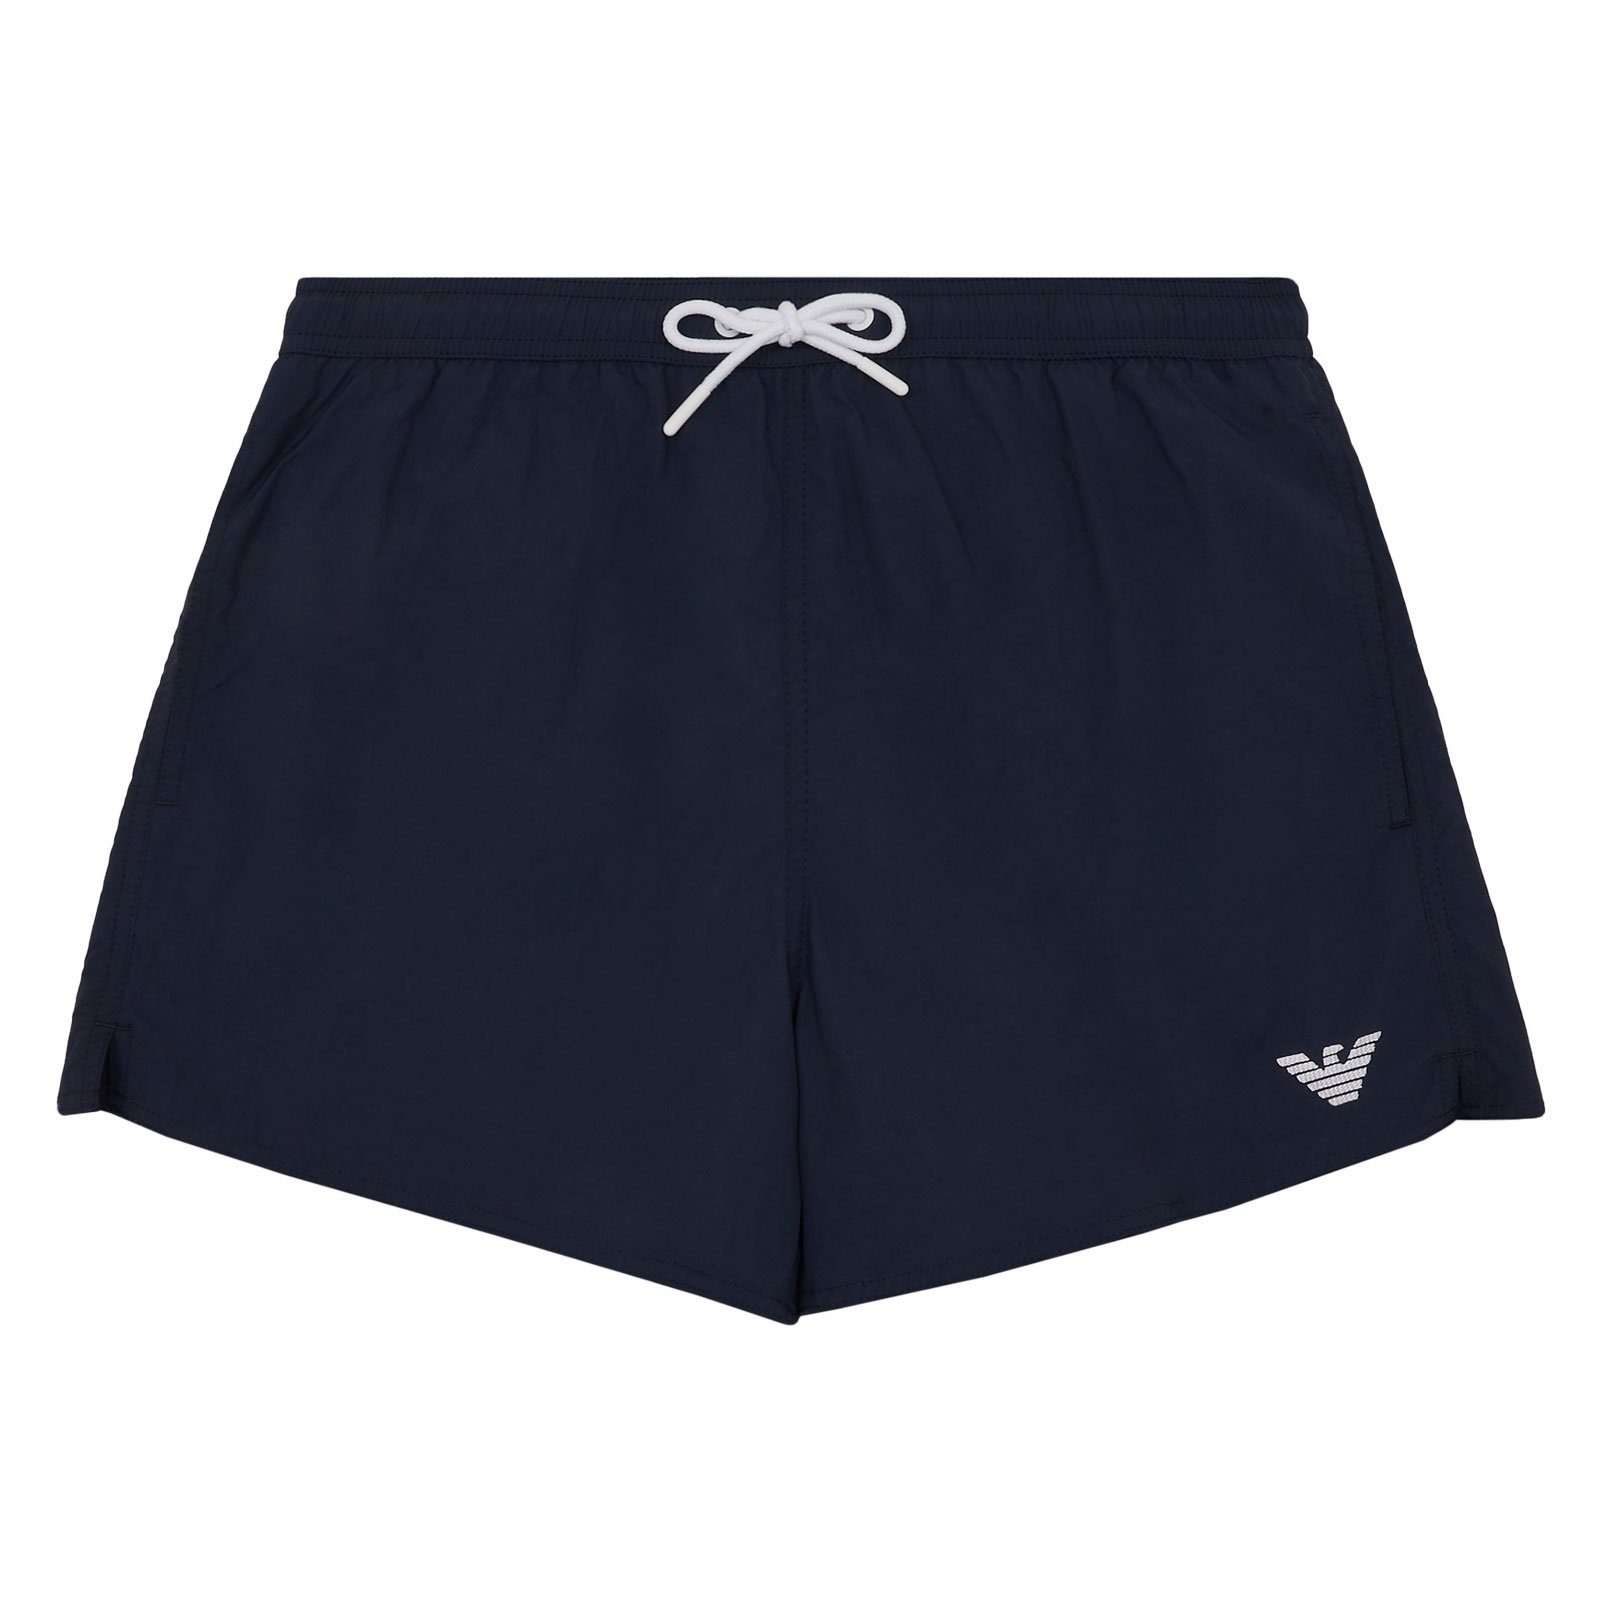 Emporio Armani Boxer-Badehose Mid Boxer Beachwear mit kleinem Markenlogo am linken Bein 06935 navy blue